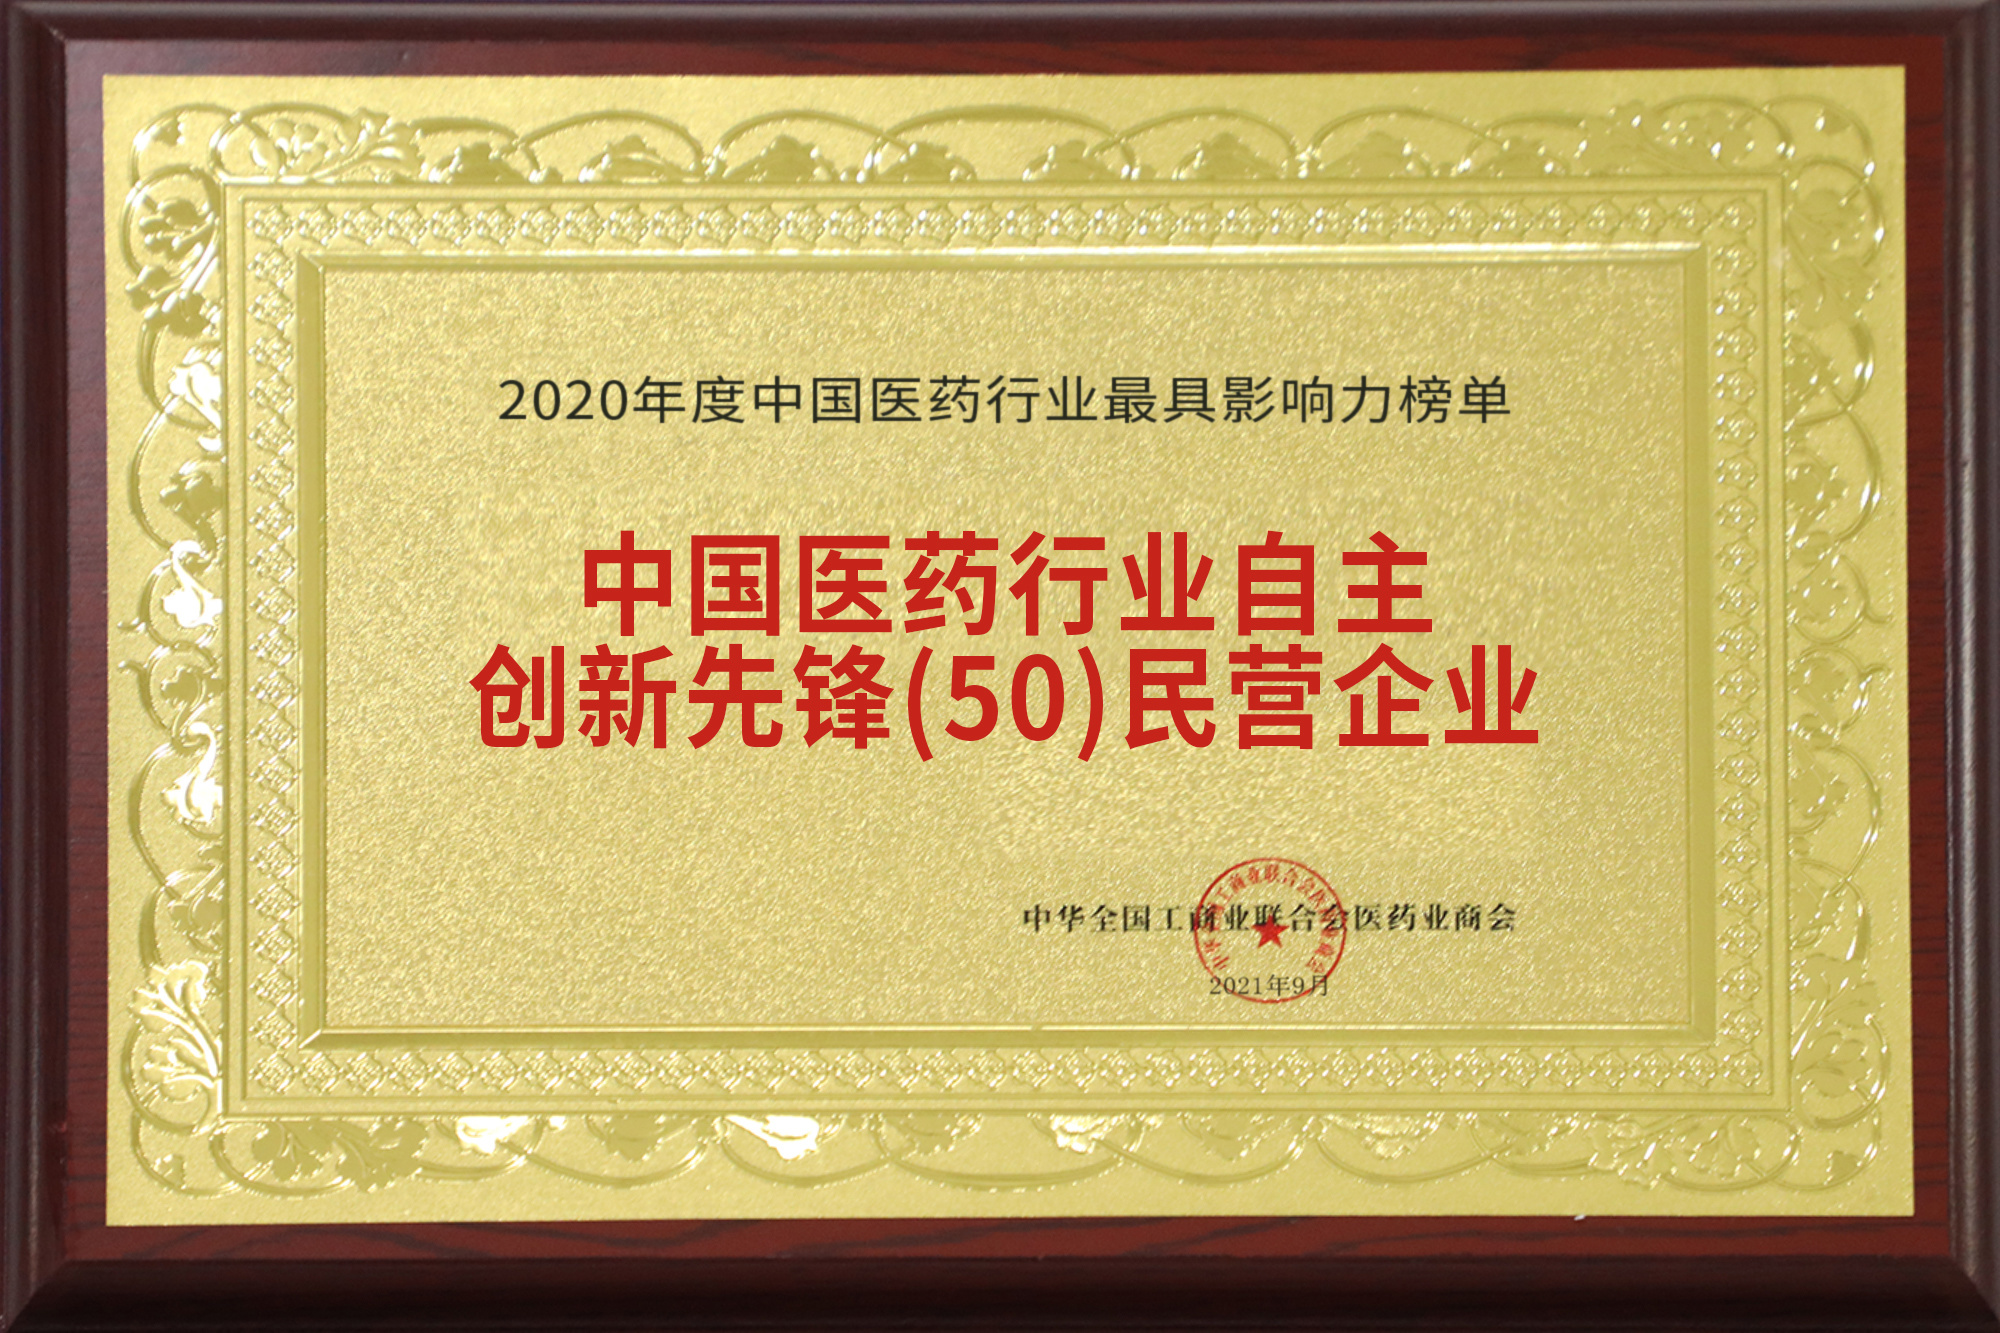 中国医药行业自主创新先锋( 50 ) 民营企业